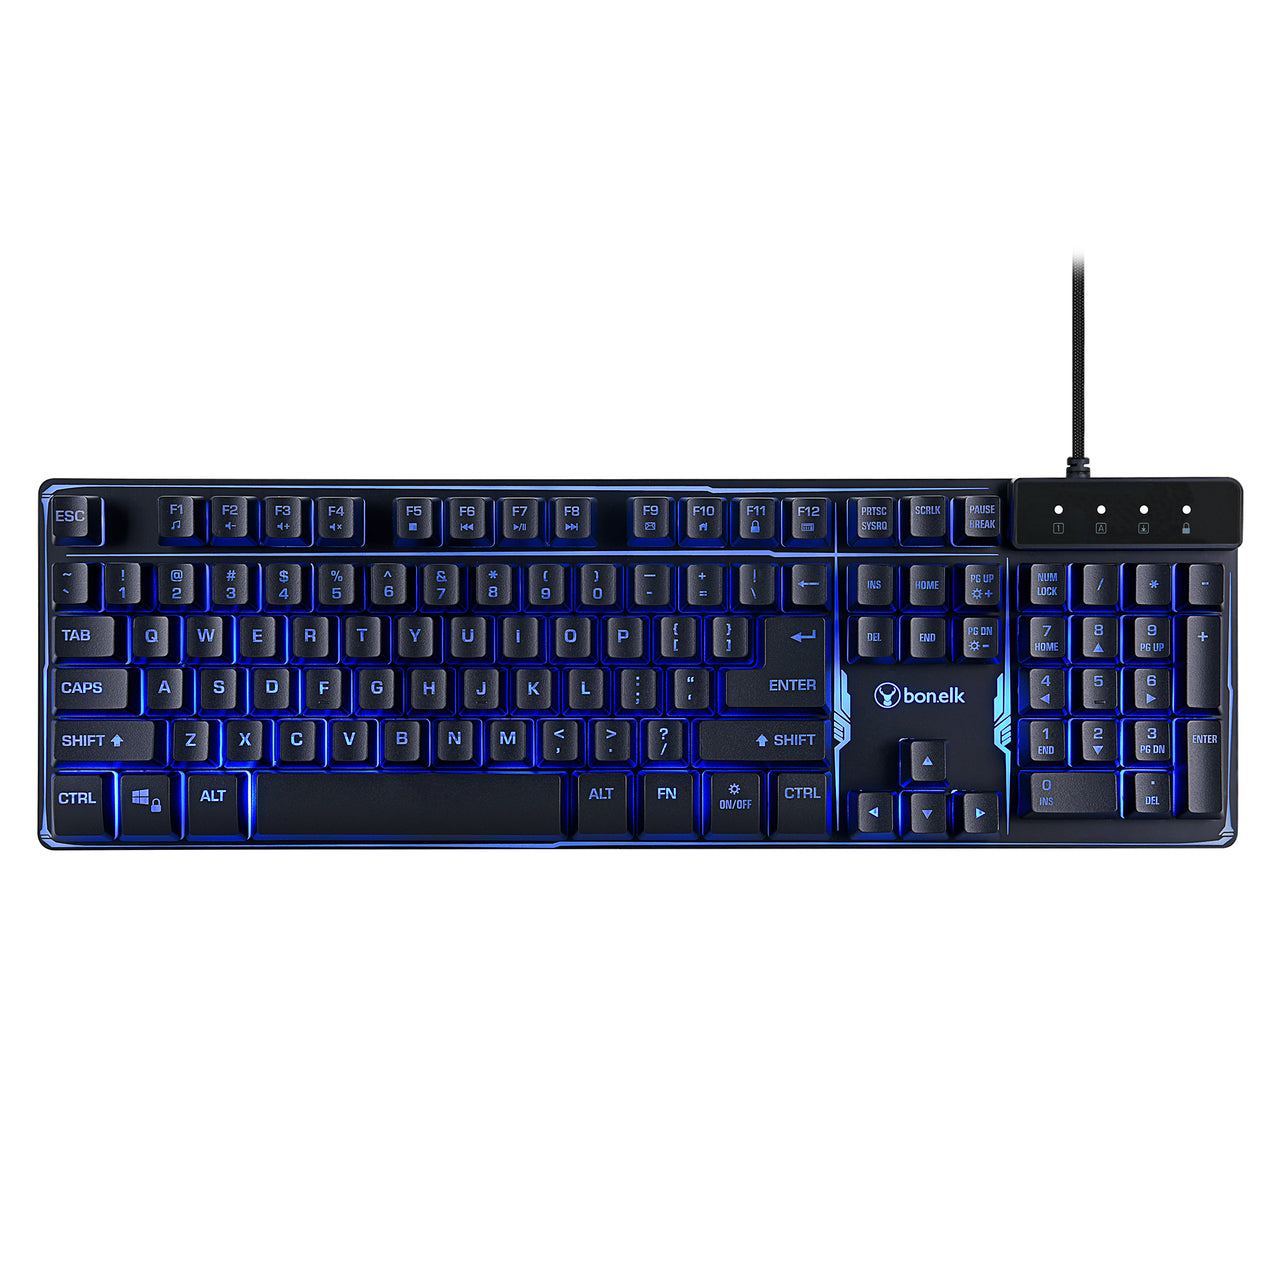 Bonelk K-308 Gaming LED Backlit Keyboard, USB, Full Size - Black